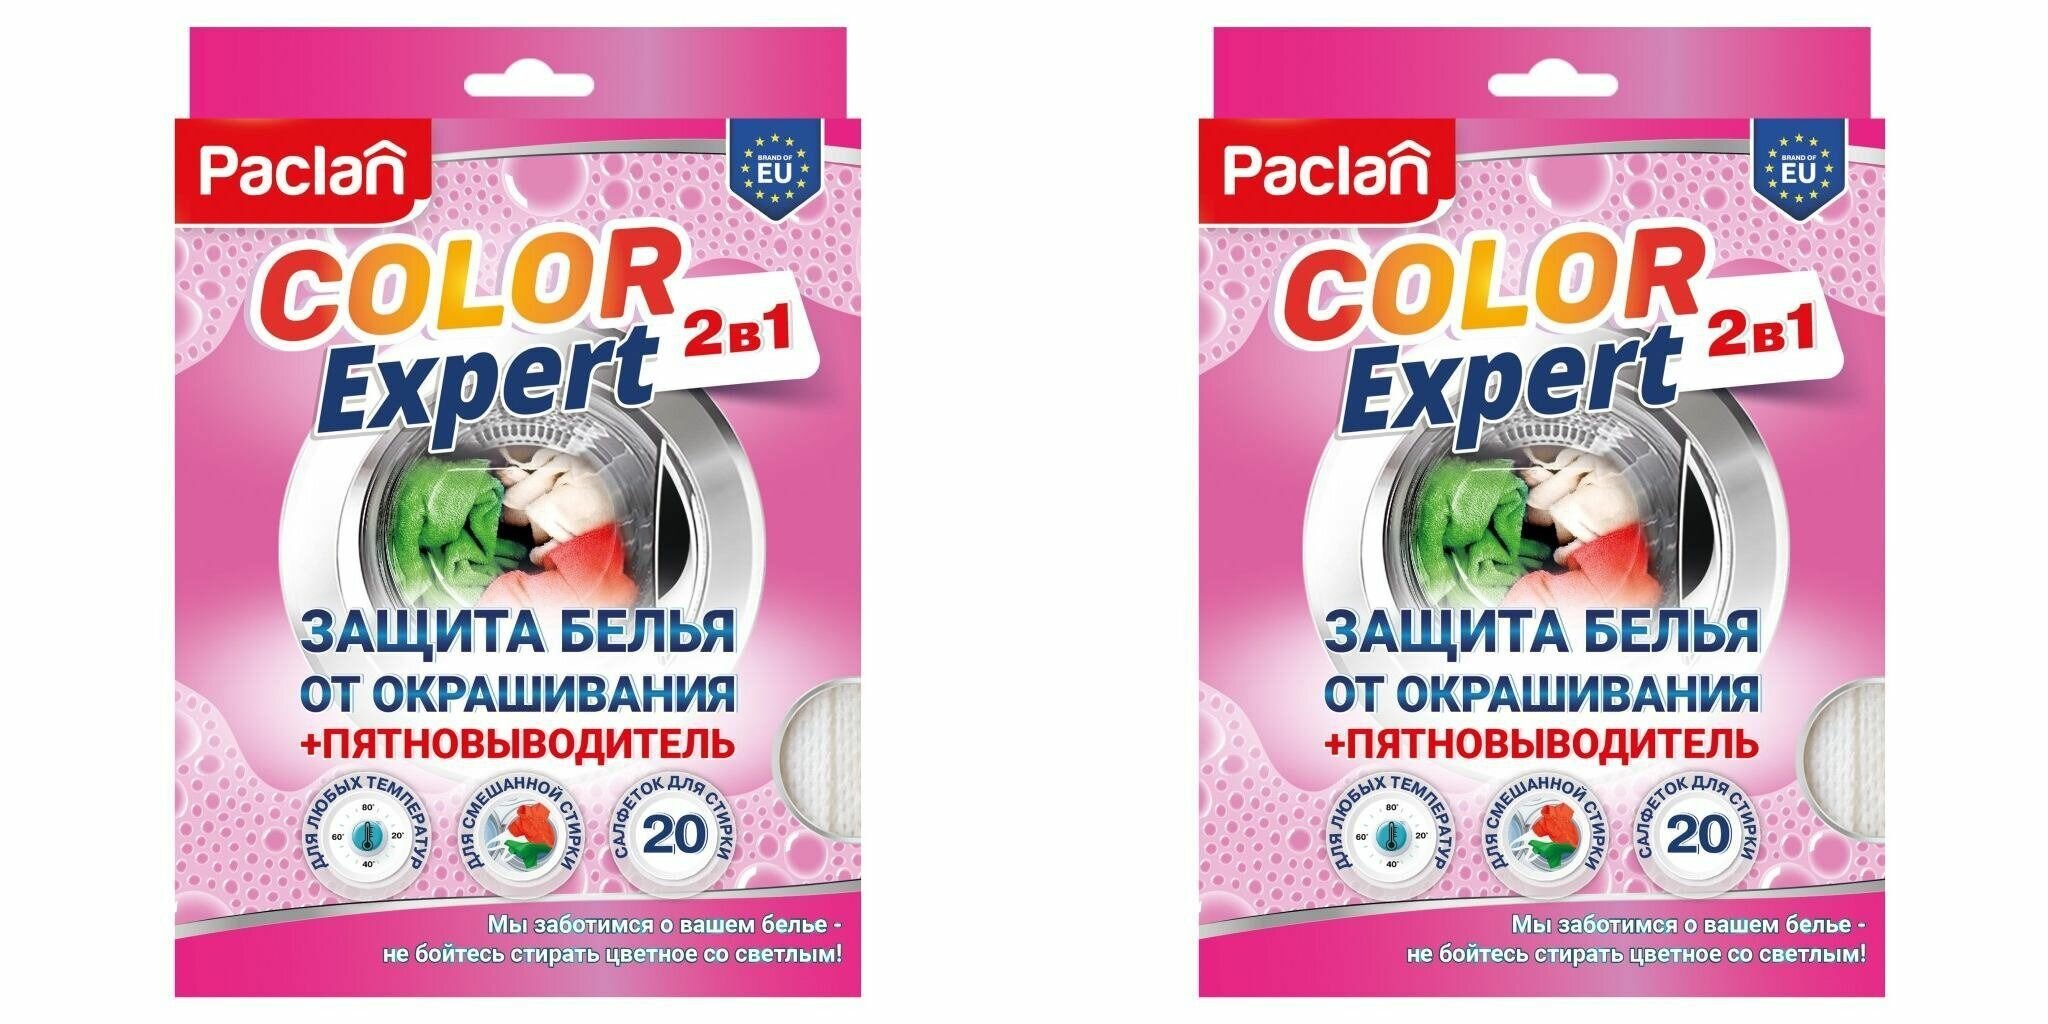 Paclan Салфетки для защиты белья от окрашивания Color Expert 2в1 с пятновыводителем 20 шт - 2 упаковки